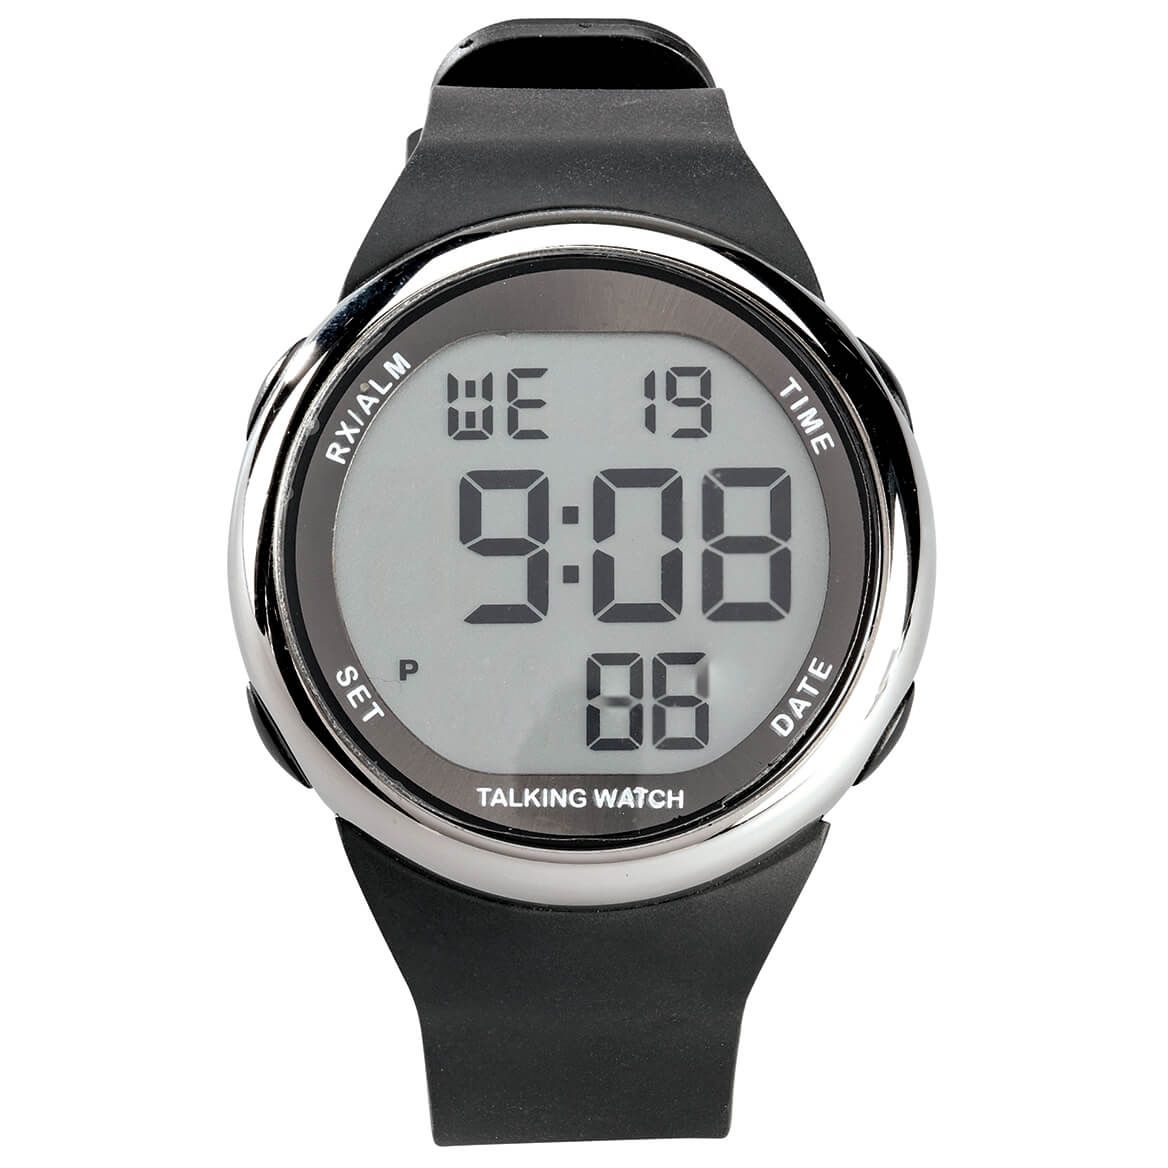 Talking Atomic LCD Sport Watch + '-' + 375555